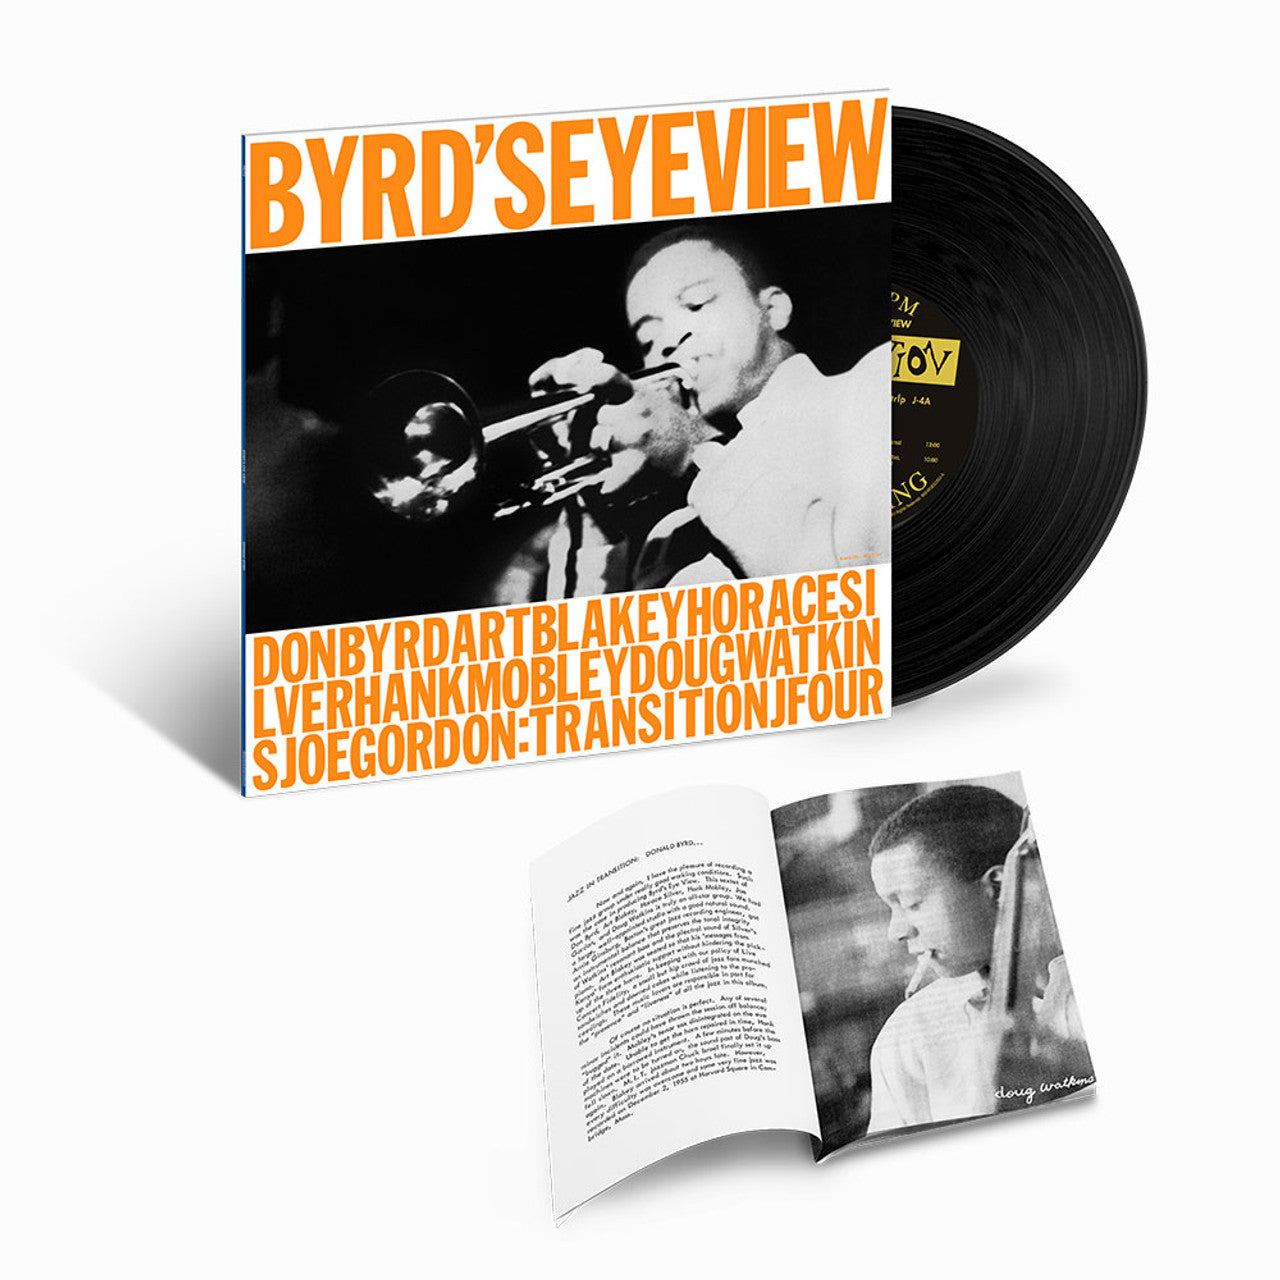 Donald Byrd - Byrd's Eye View (Mono) - Tone Poet LP